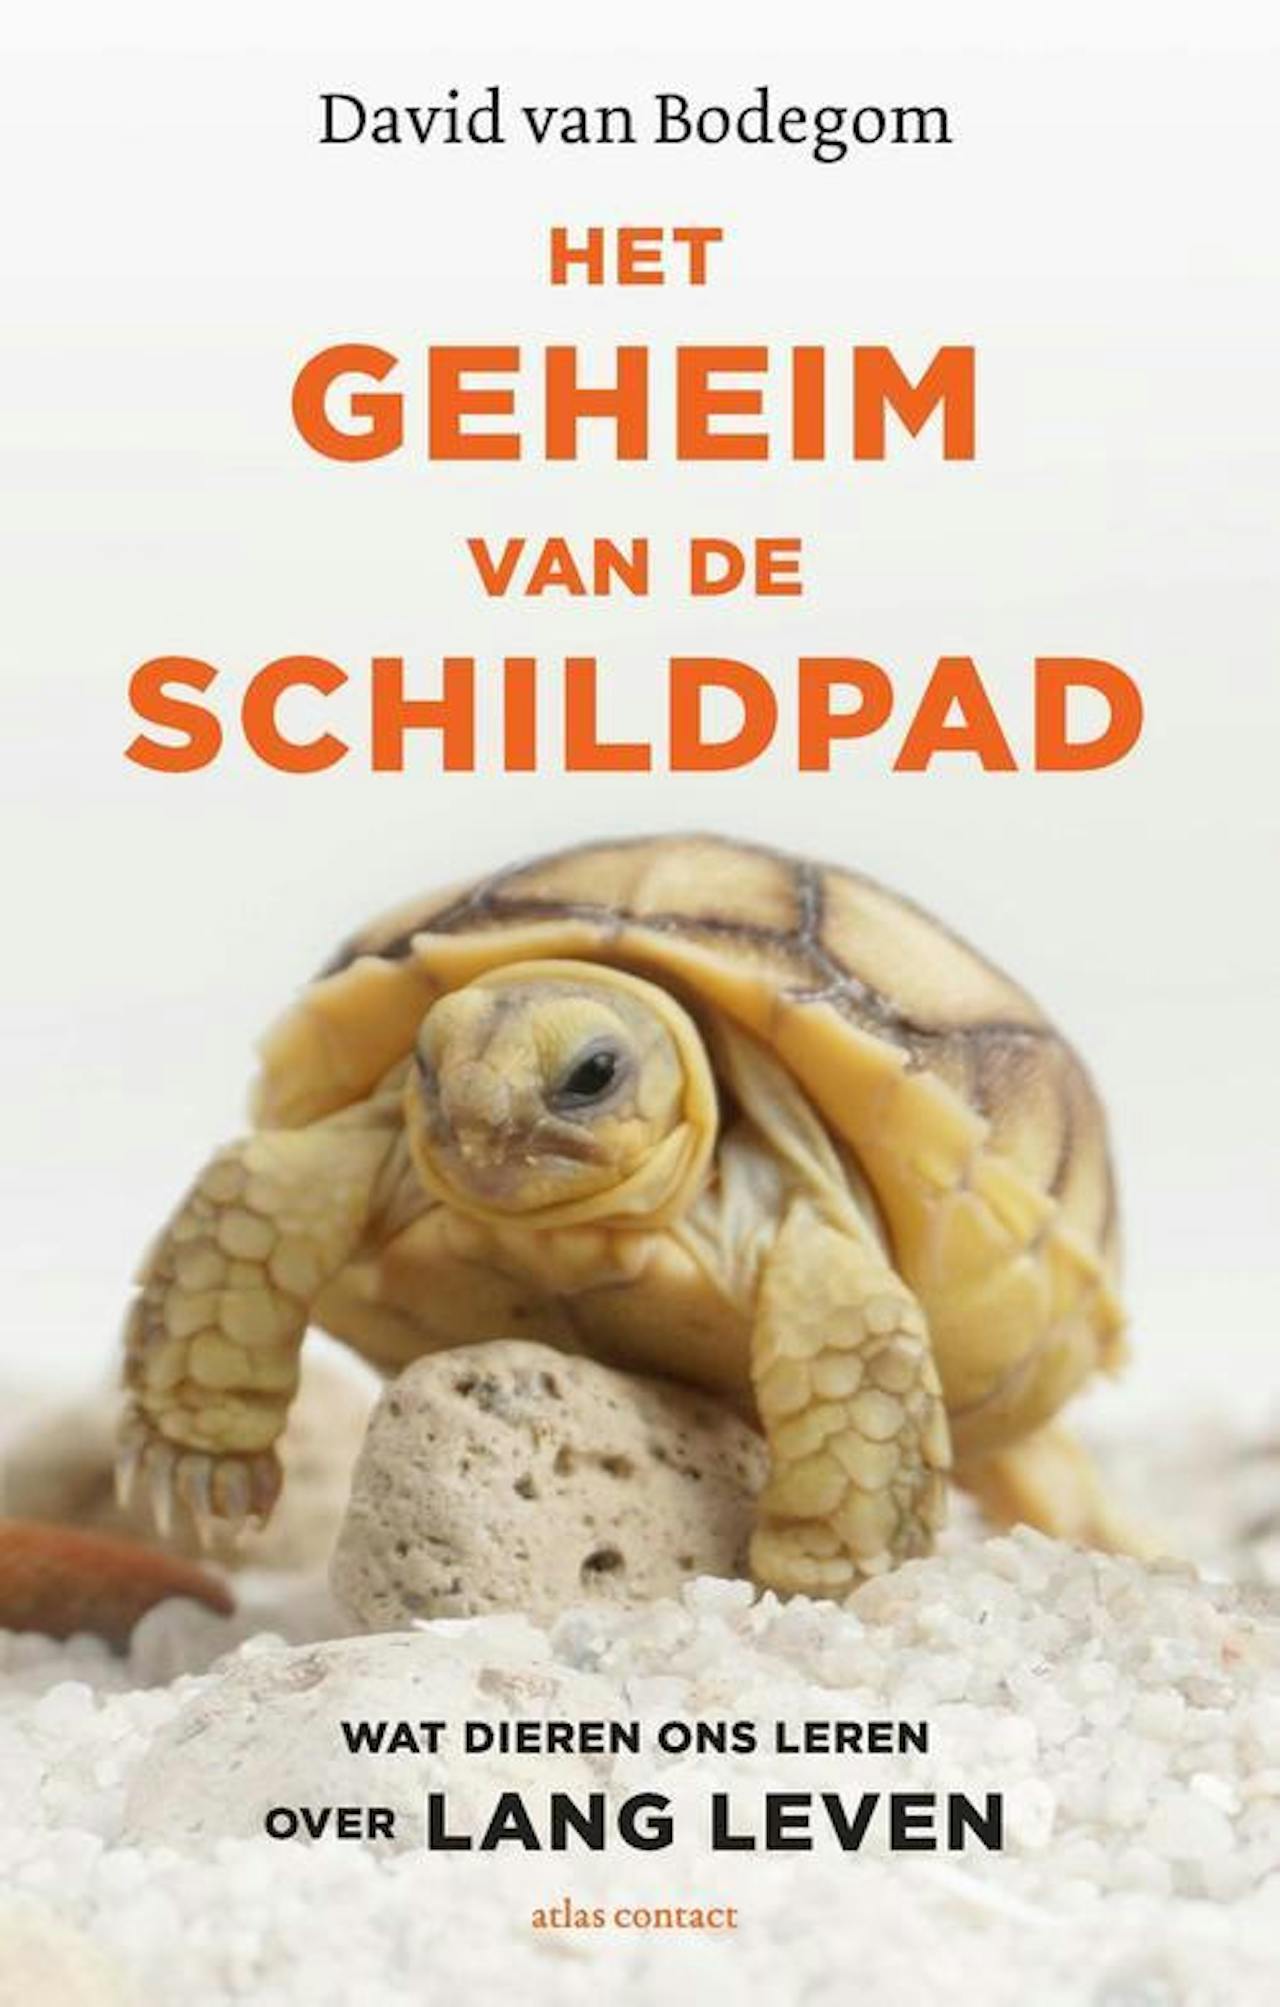 Cover van een boek van David van Bodegom: Het geheim van de schildpad, wat dieren ons leren over lang leven.